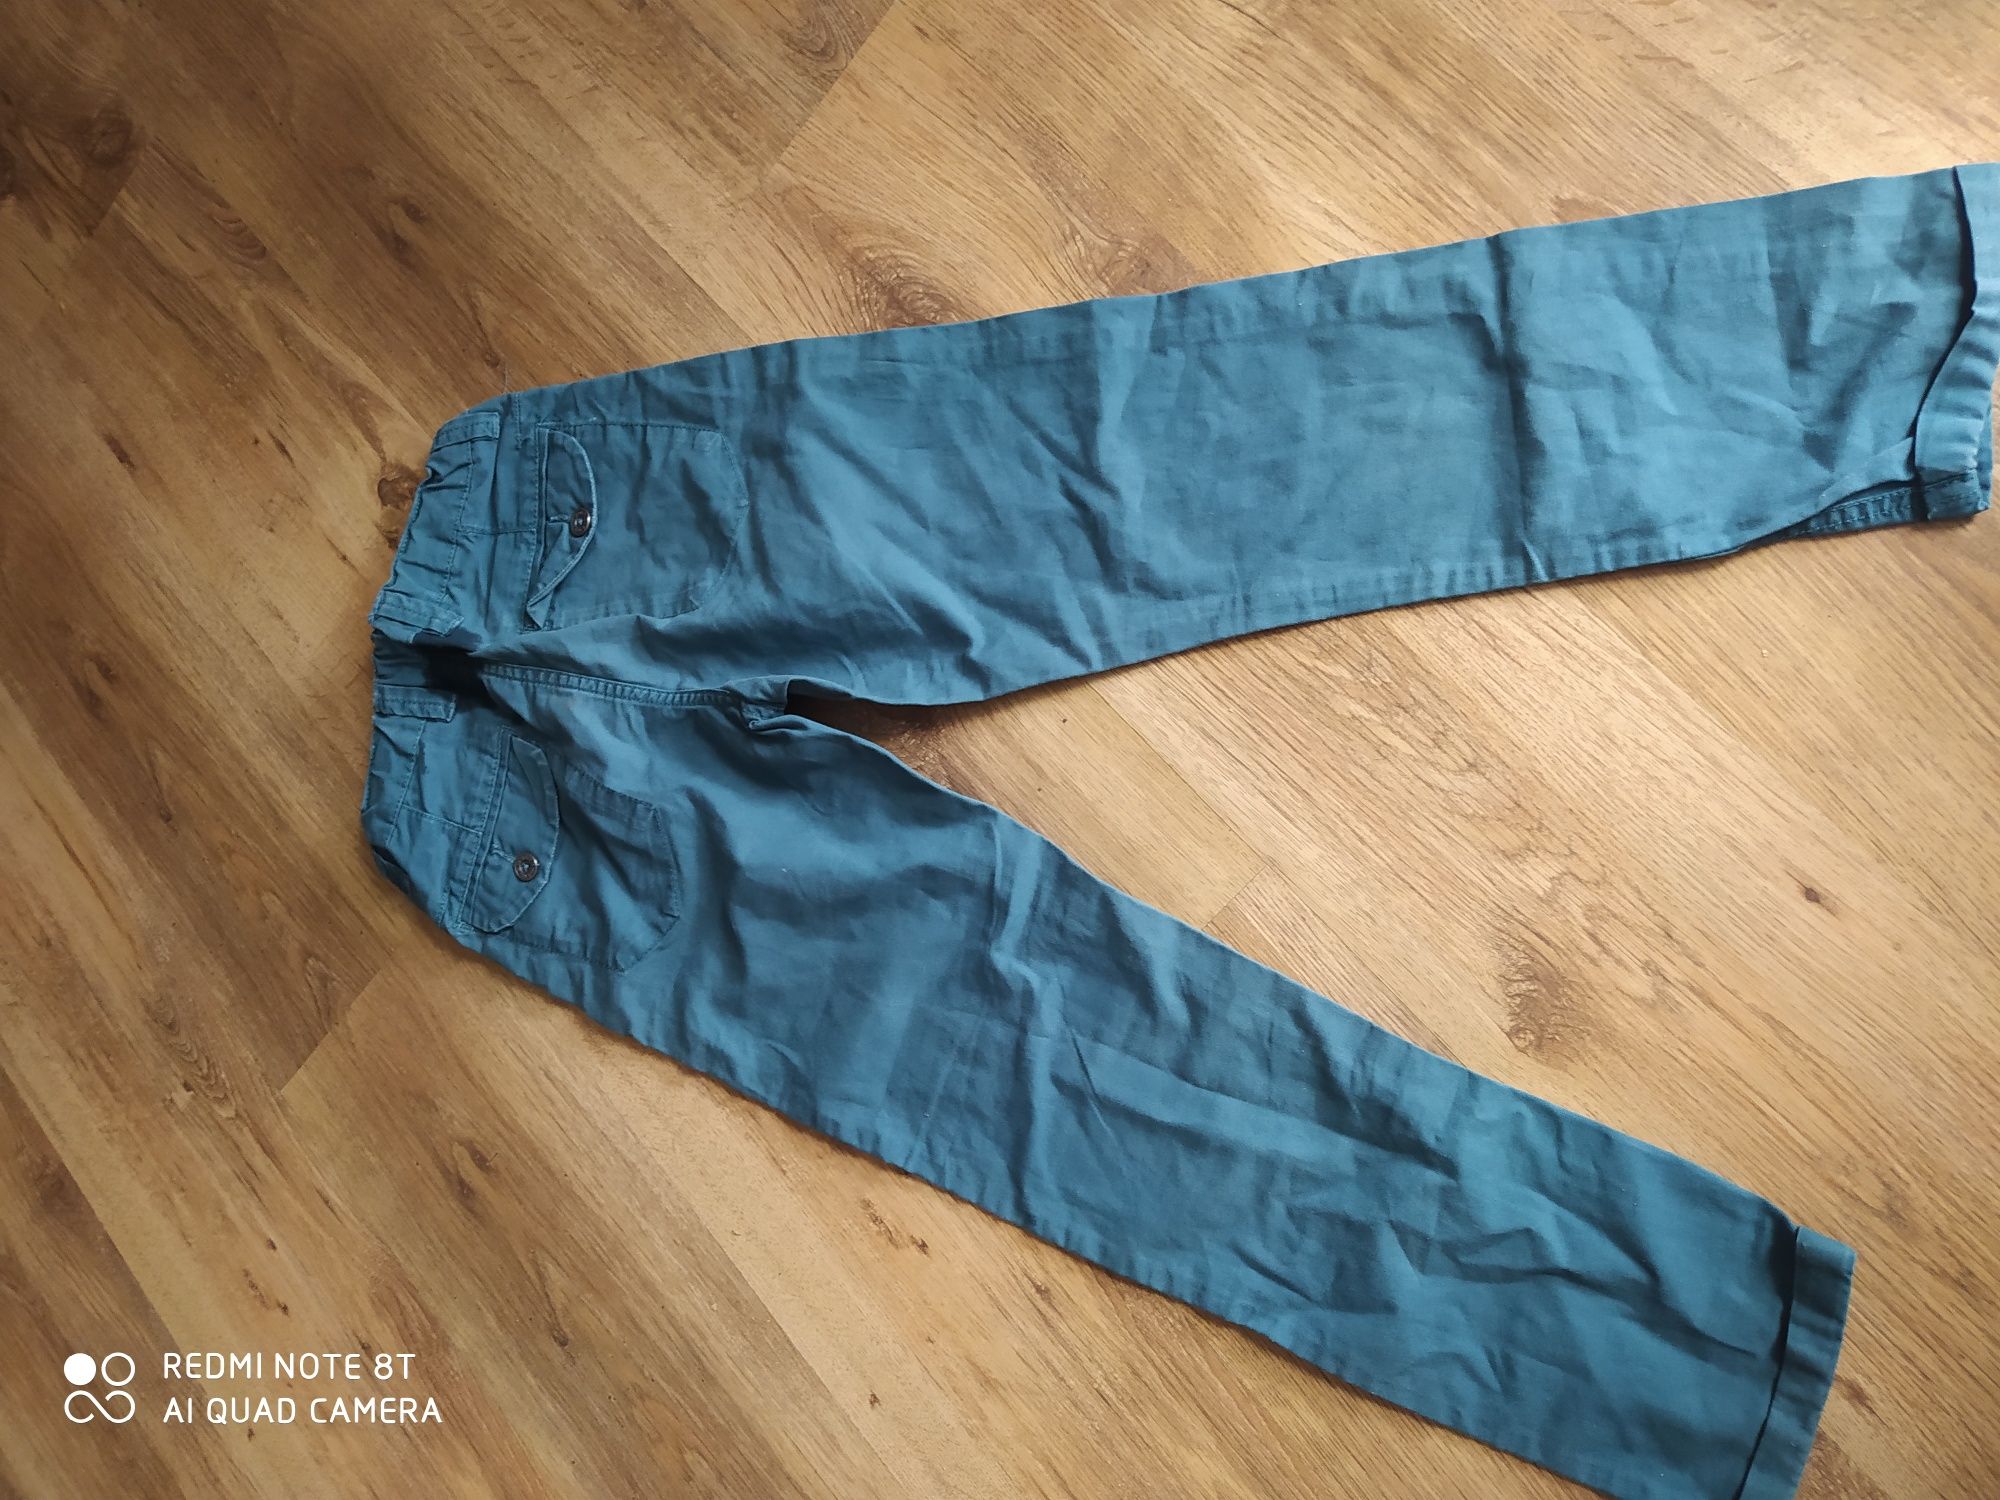 Turkusowe spodnie chłopięce regulowane w pasie na gumce, rozmiar 140